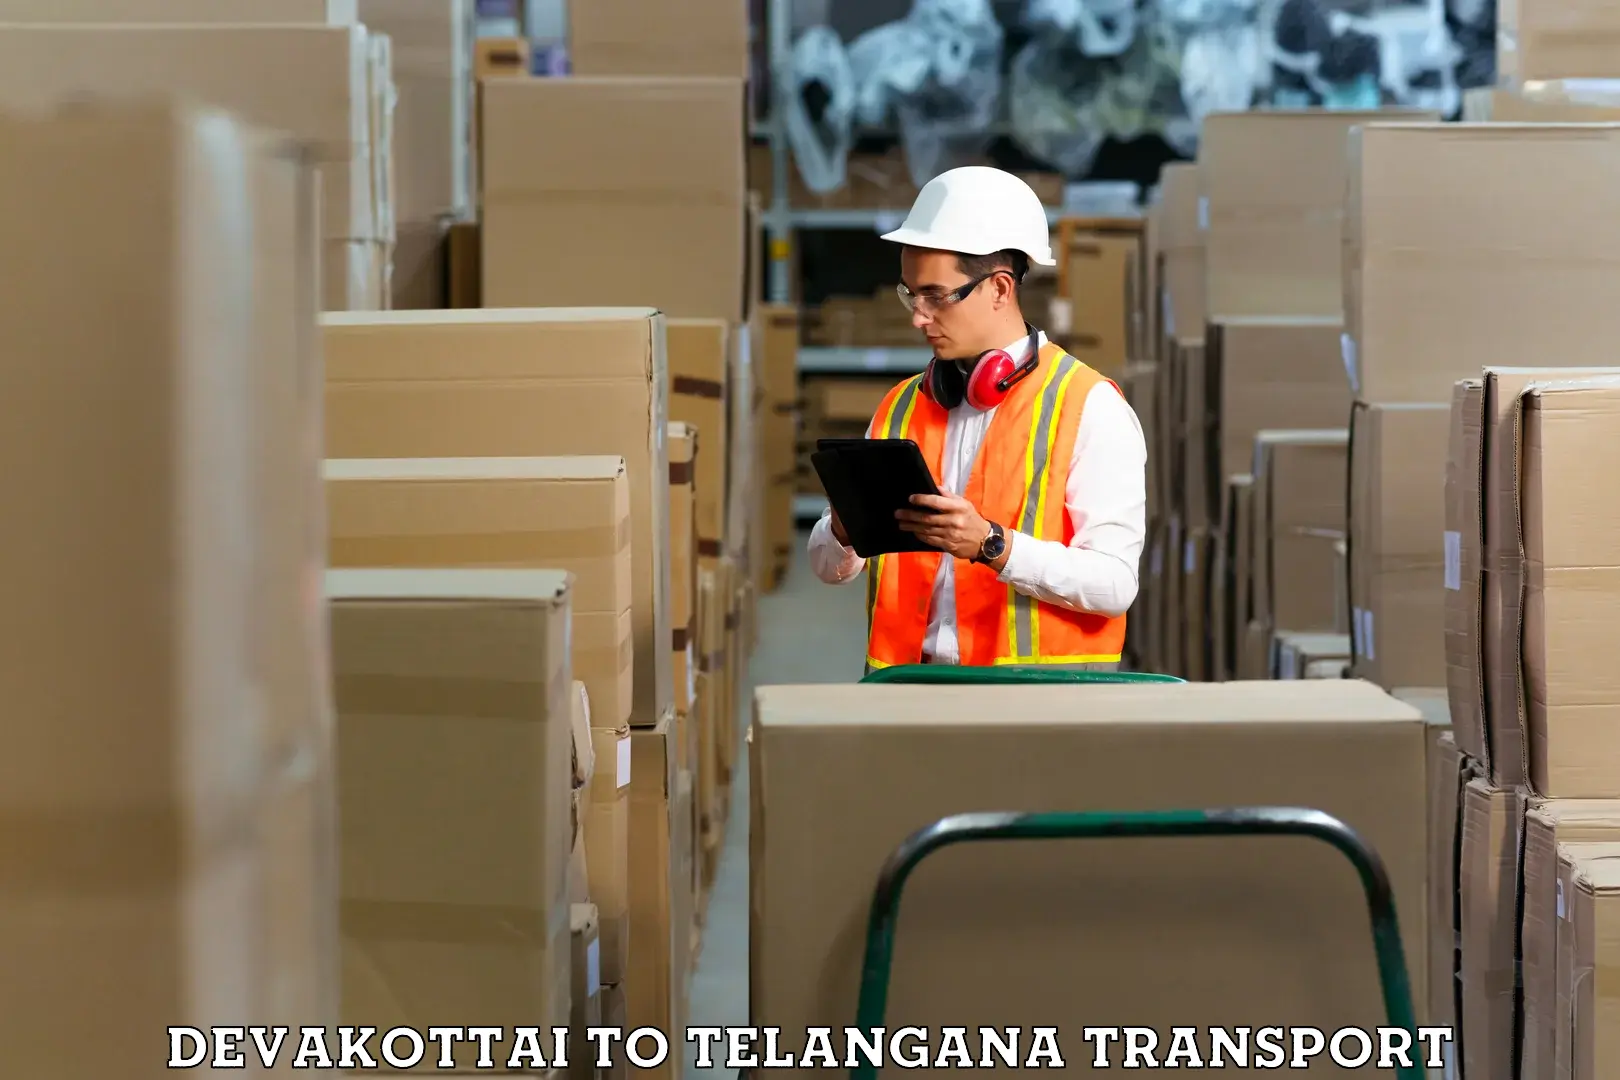 India truck logistics services Devakottai to Cherla